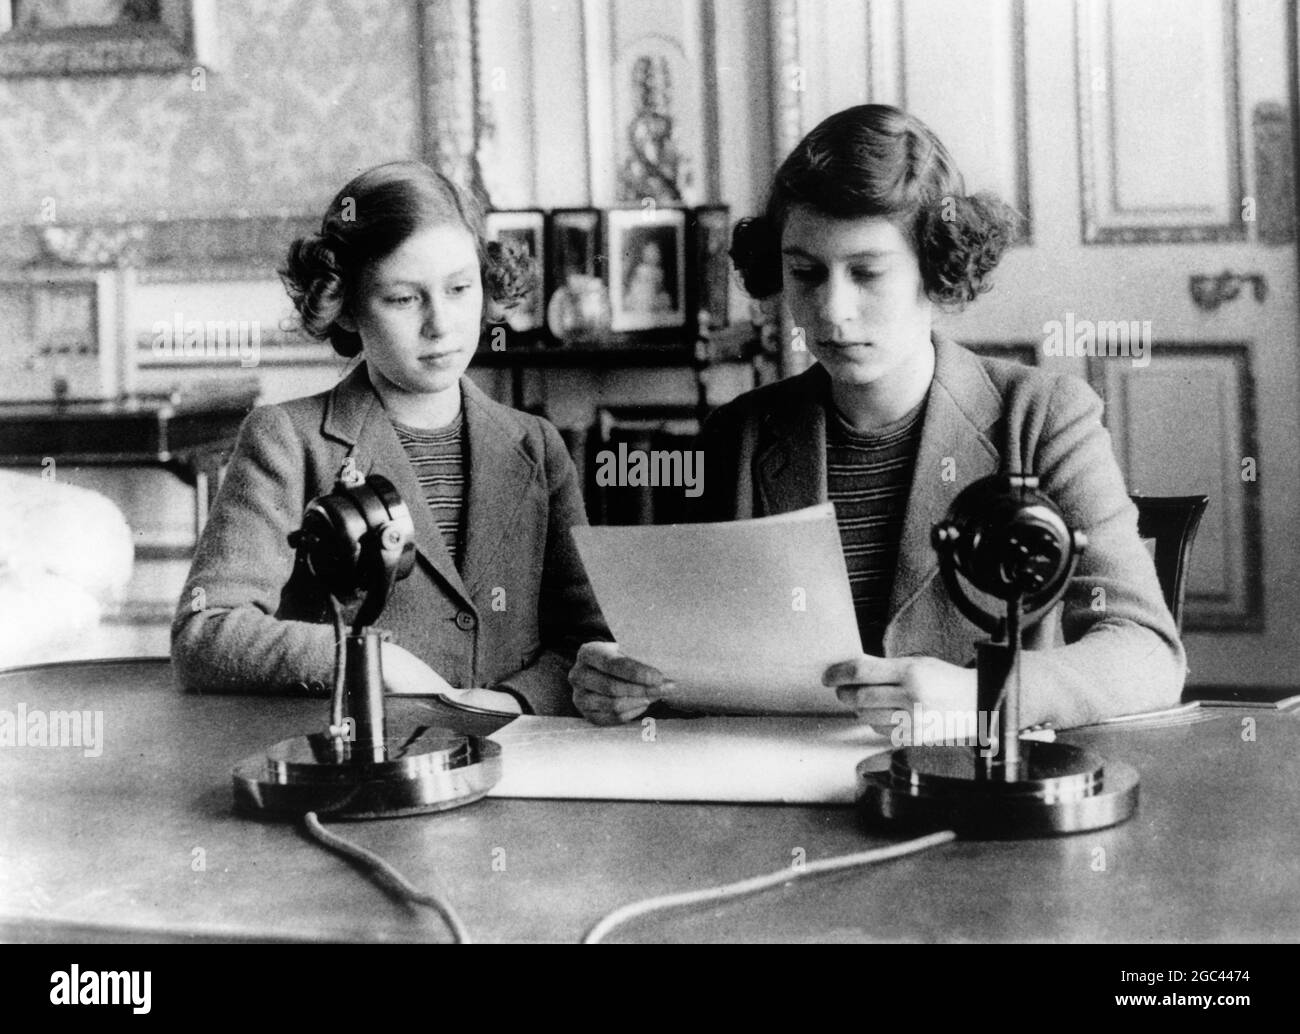 Prinzessin Elizabeth nahm ihre erste Sendung aus Windsor auf, die während der Children's Hour für BBC Radio ausgestrahlt wurde. Prinzessin Margaret sitzt neben ihr auf der linken Seite. 13. Oktober 1940 Stockfoto